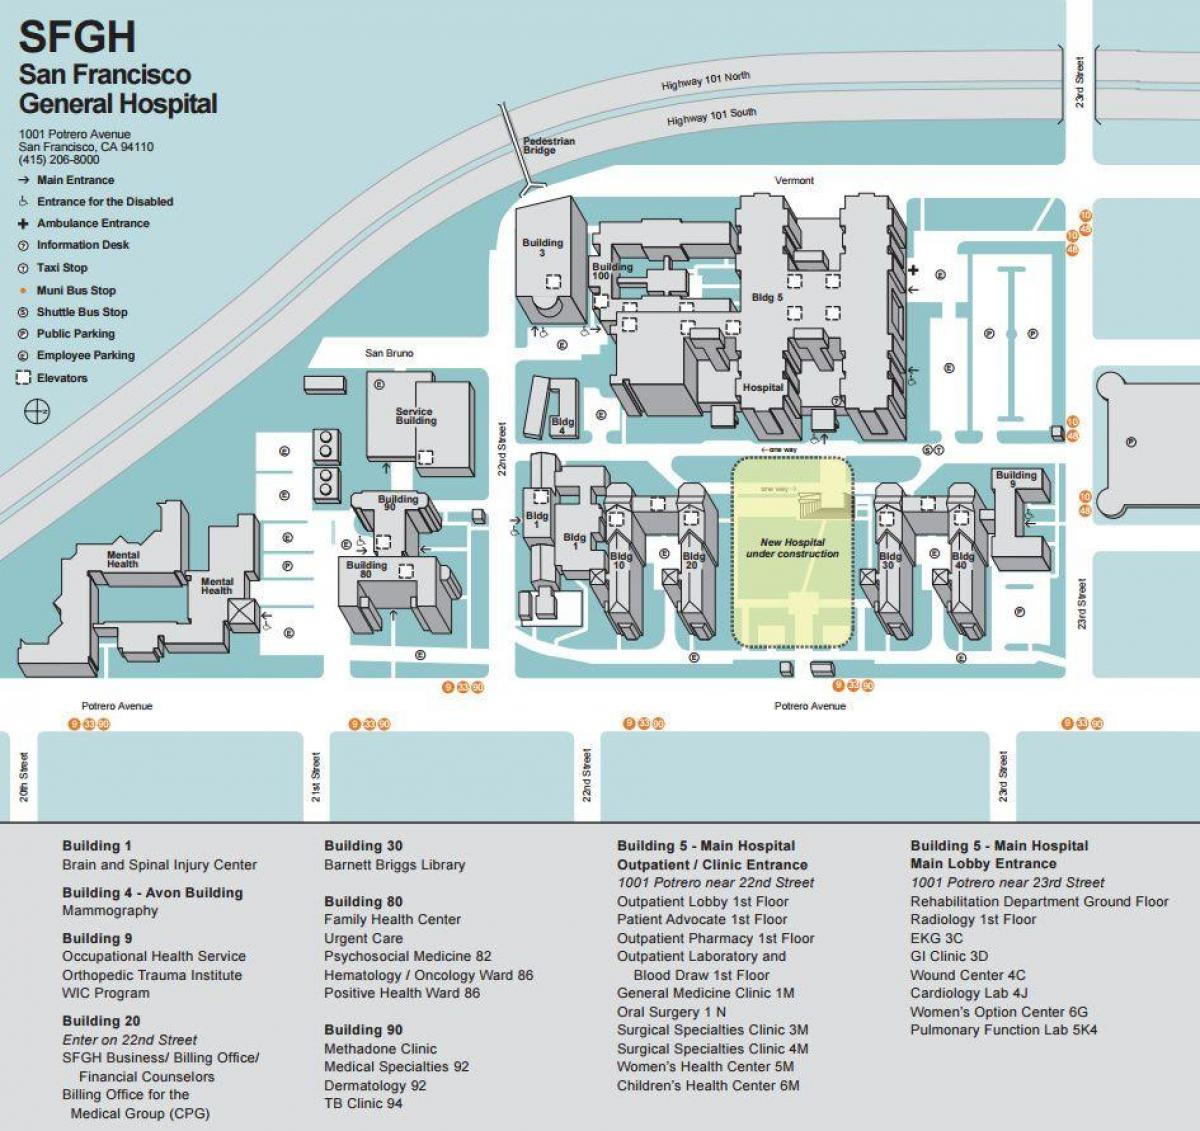 Χάρτης της ucSF medical center